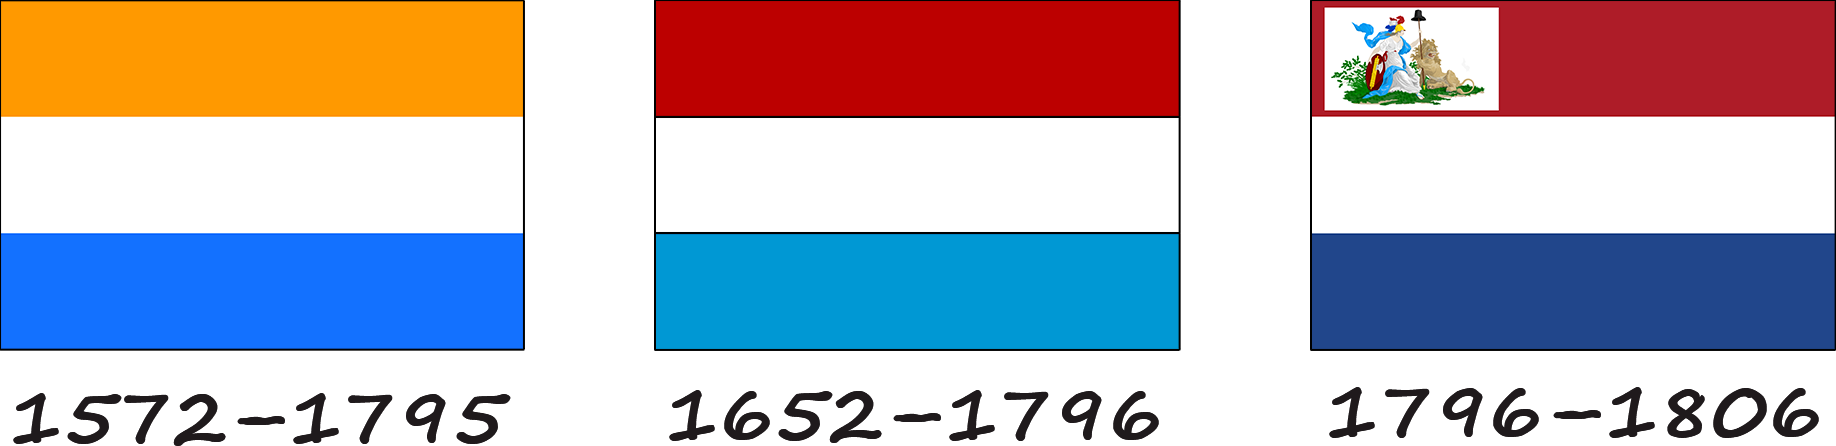 Historia de la bandera holandesa